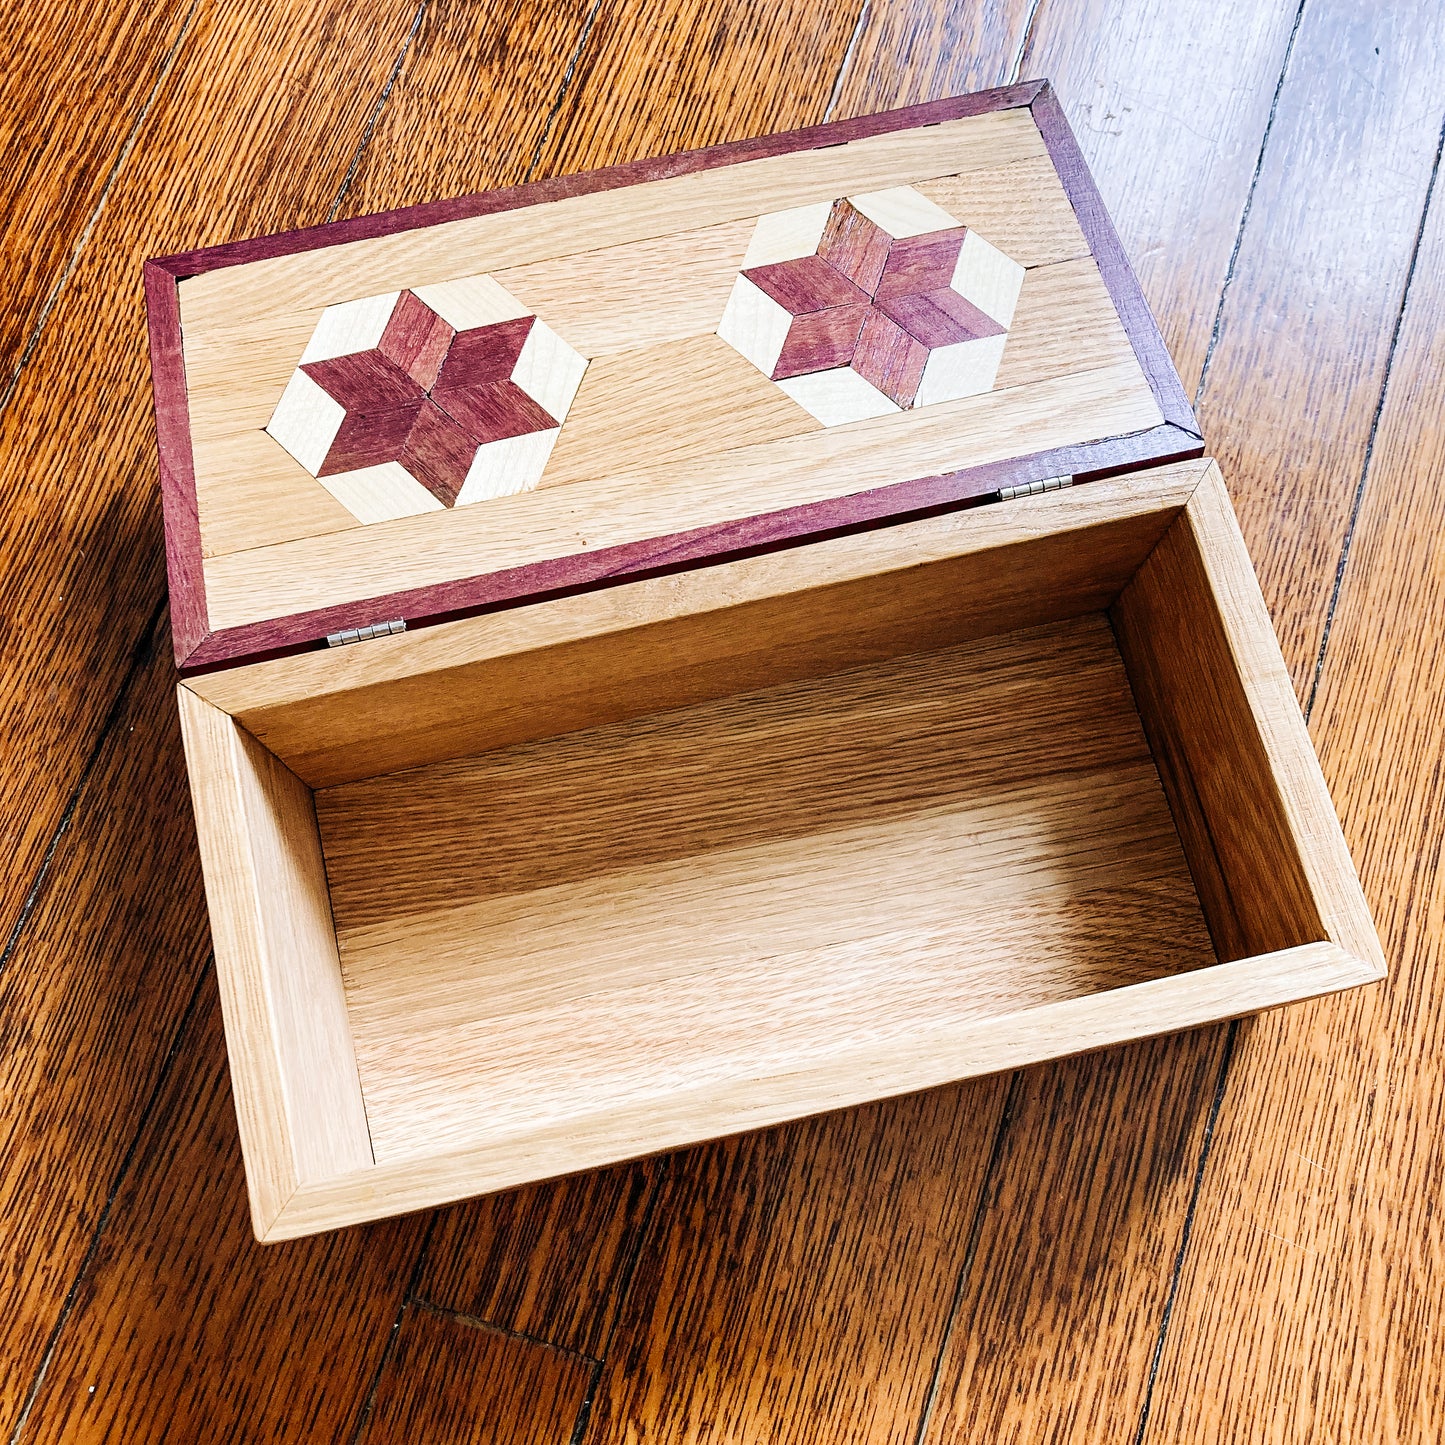 Oak box with lid